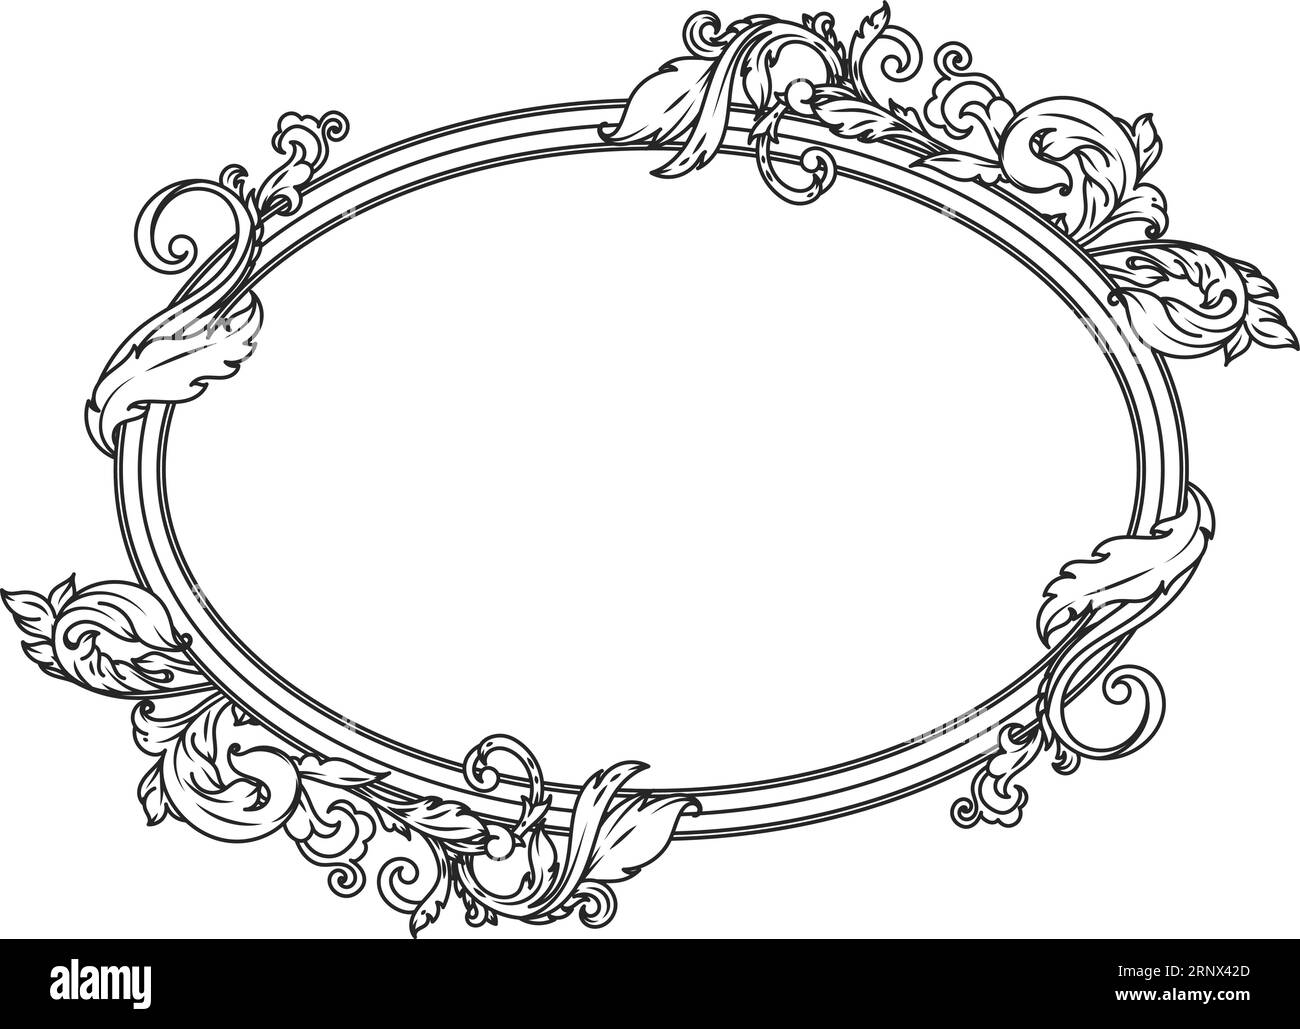 Elegant filigree frame. Ornate oval border engraving Stock Vector